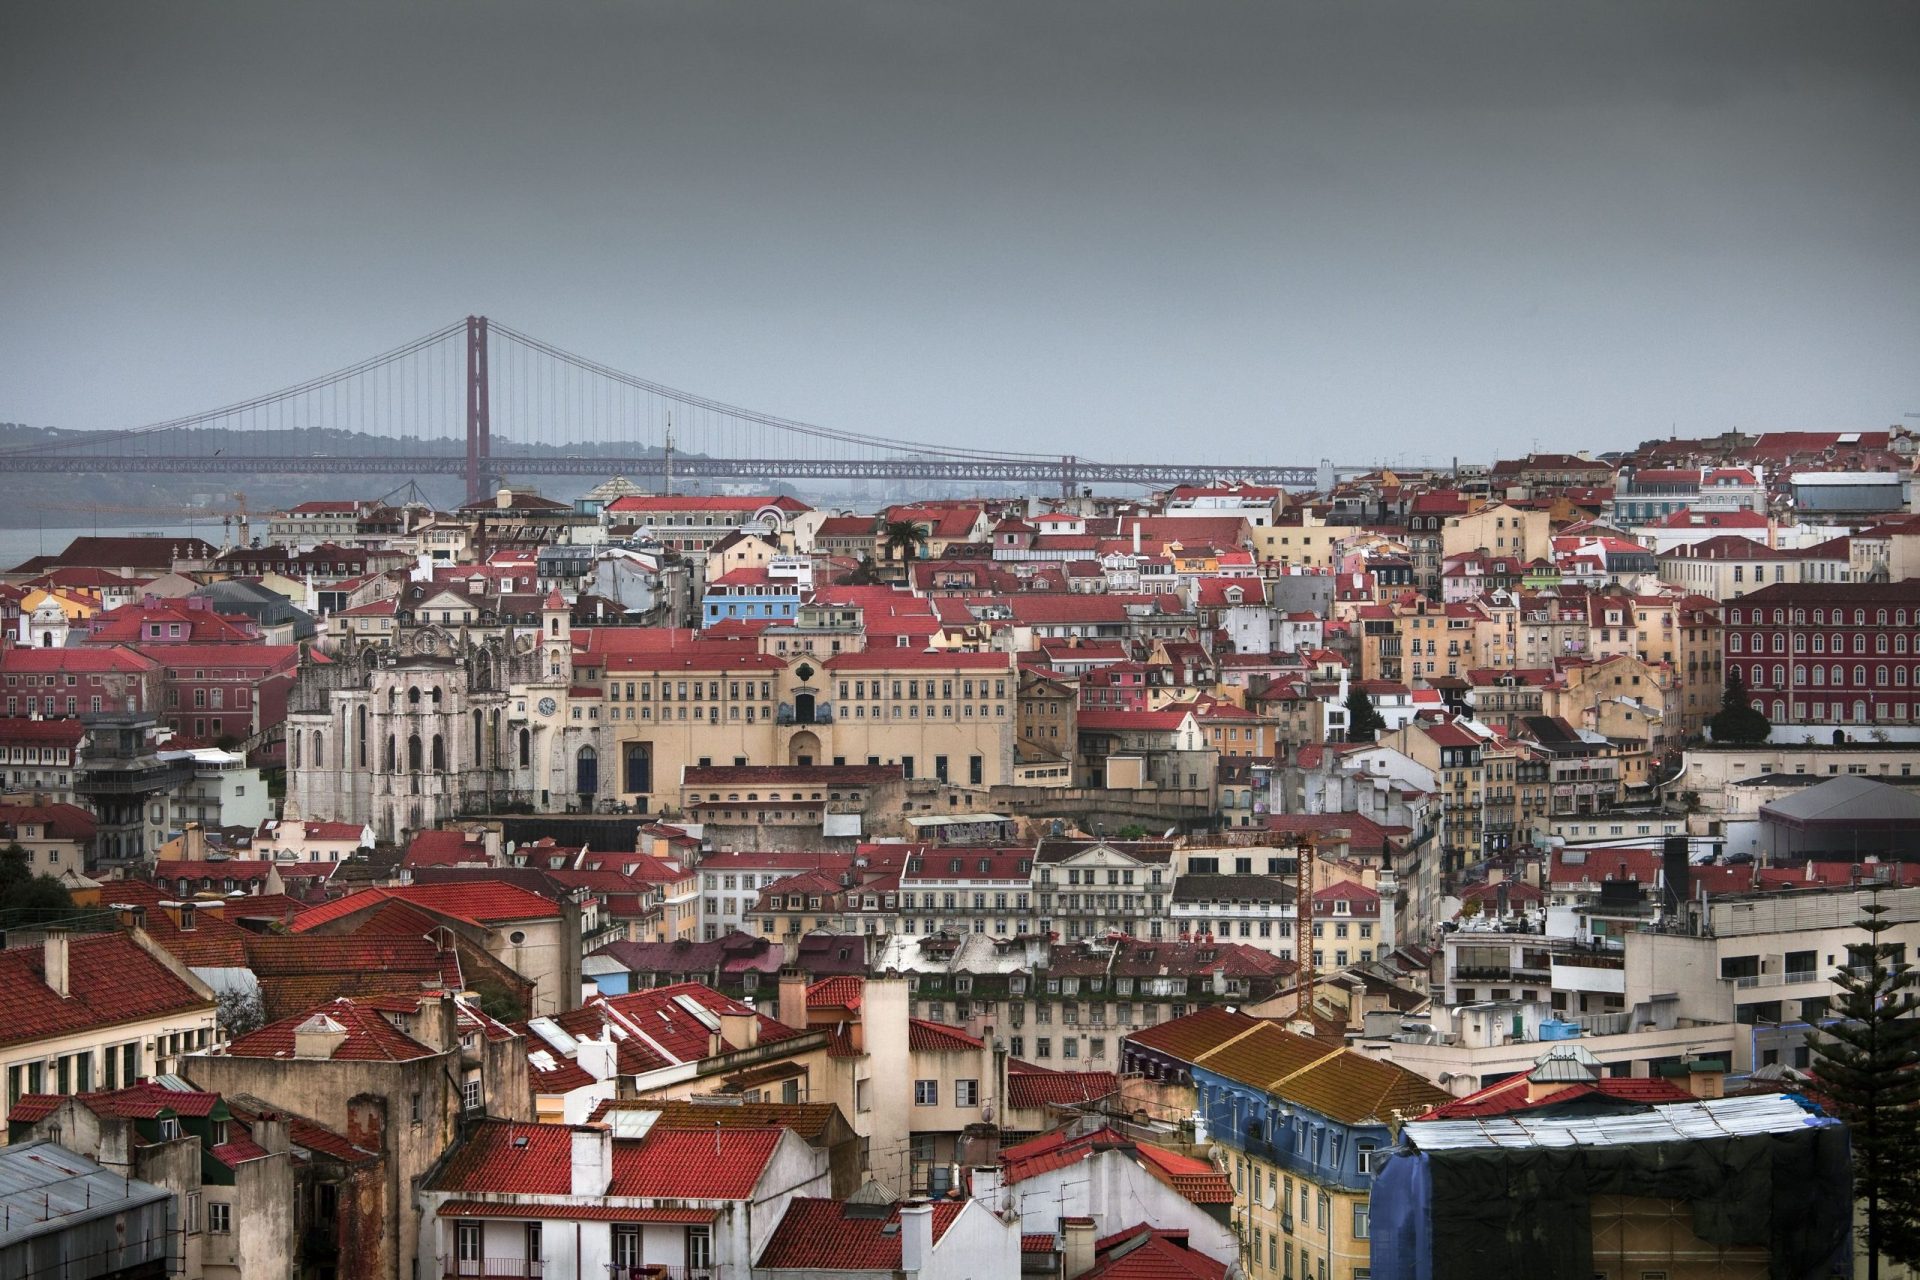 Taxa turística subiu para 2 euros em Lisboa